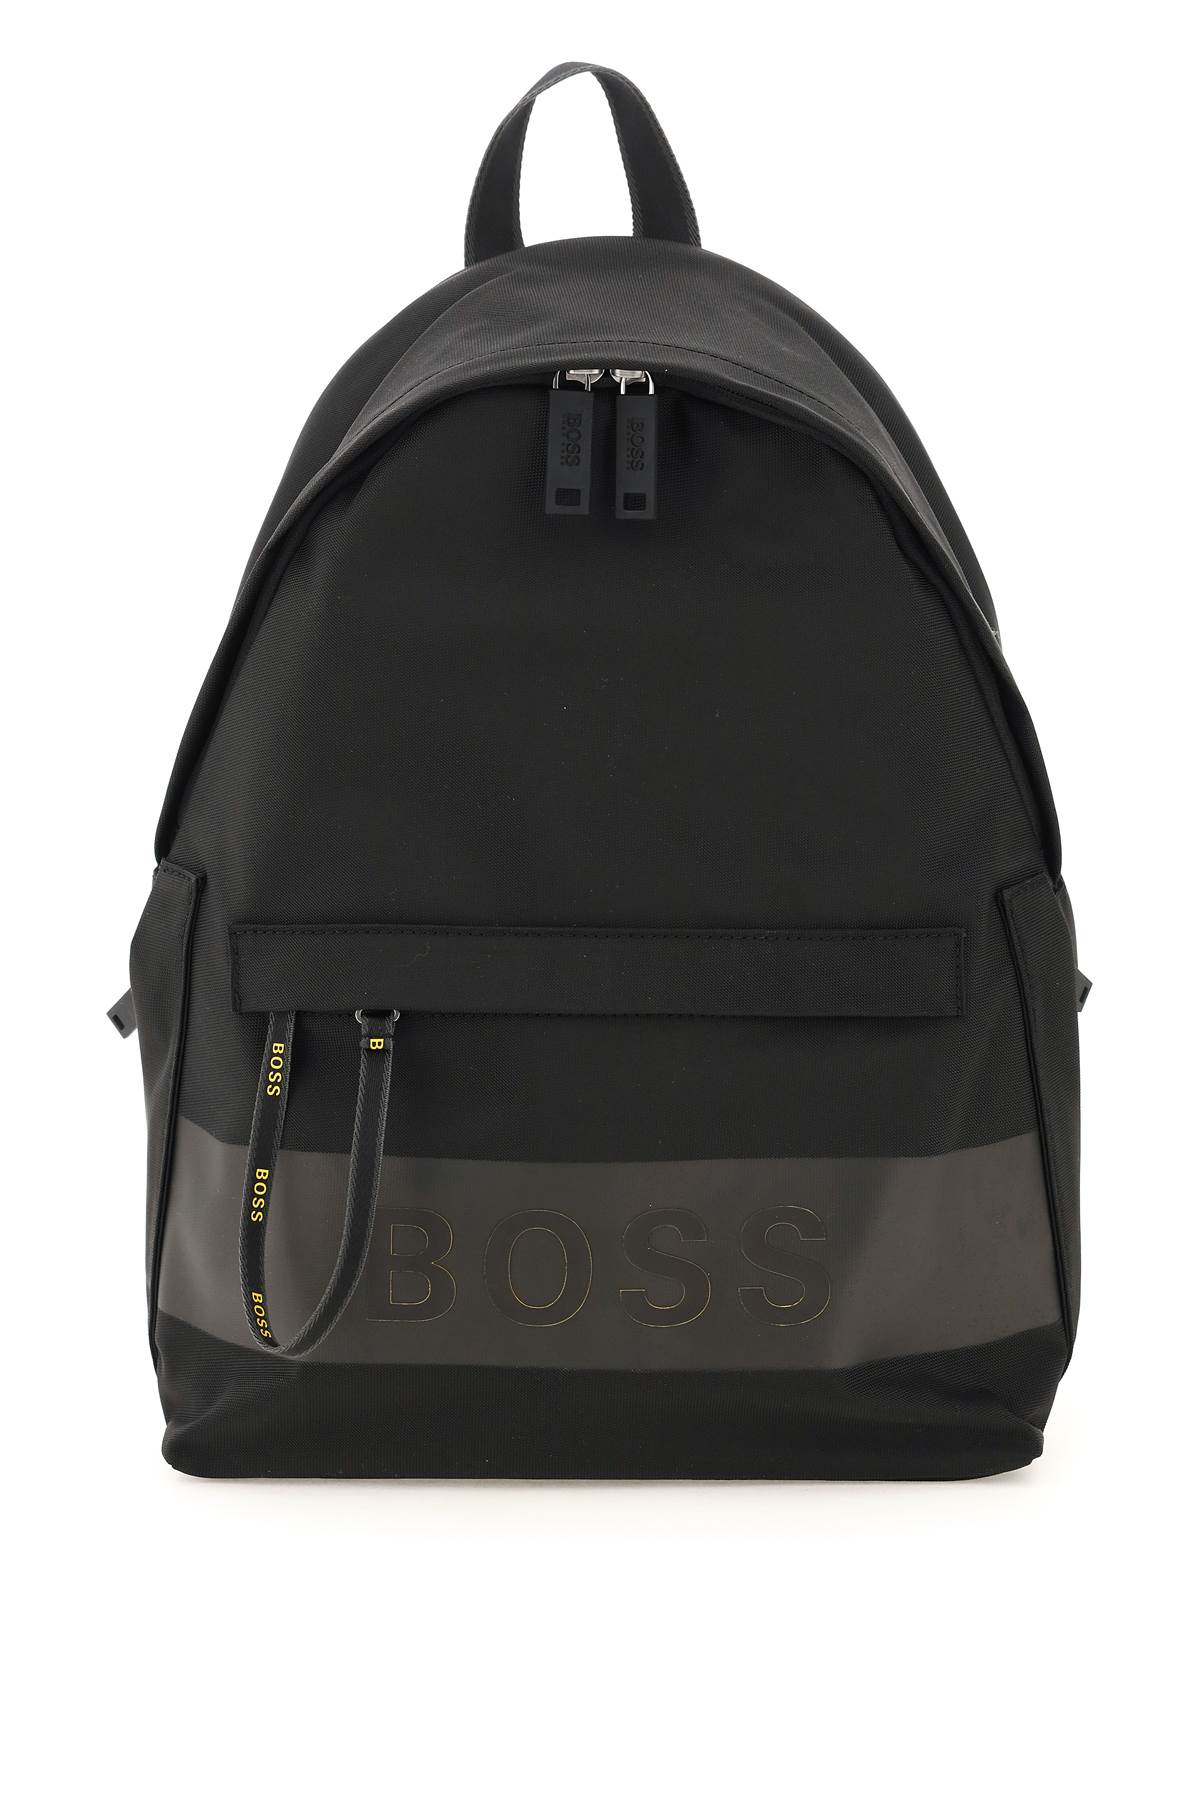 Hugo Boss Recycled Nylon Backpack